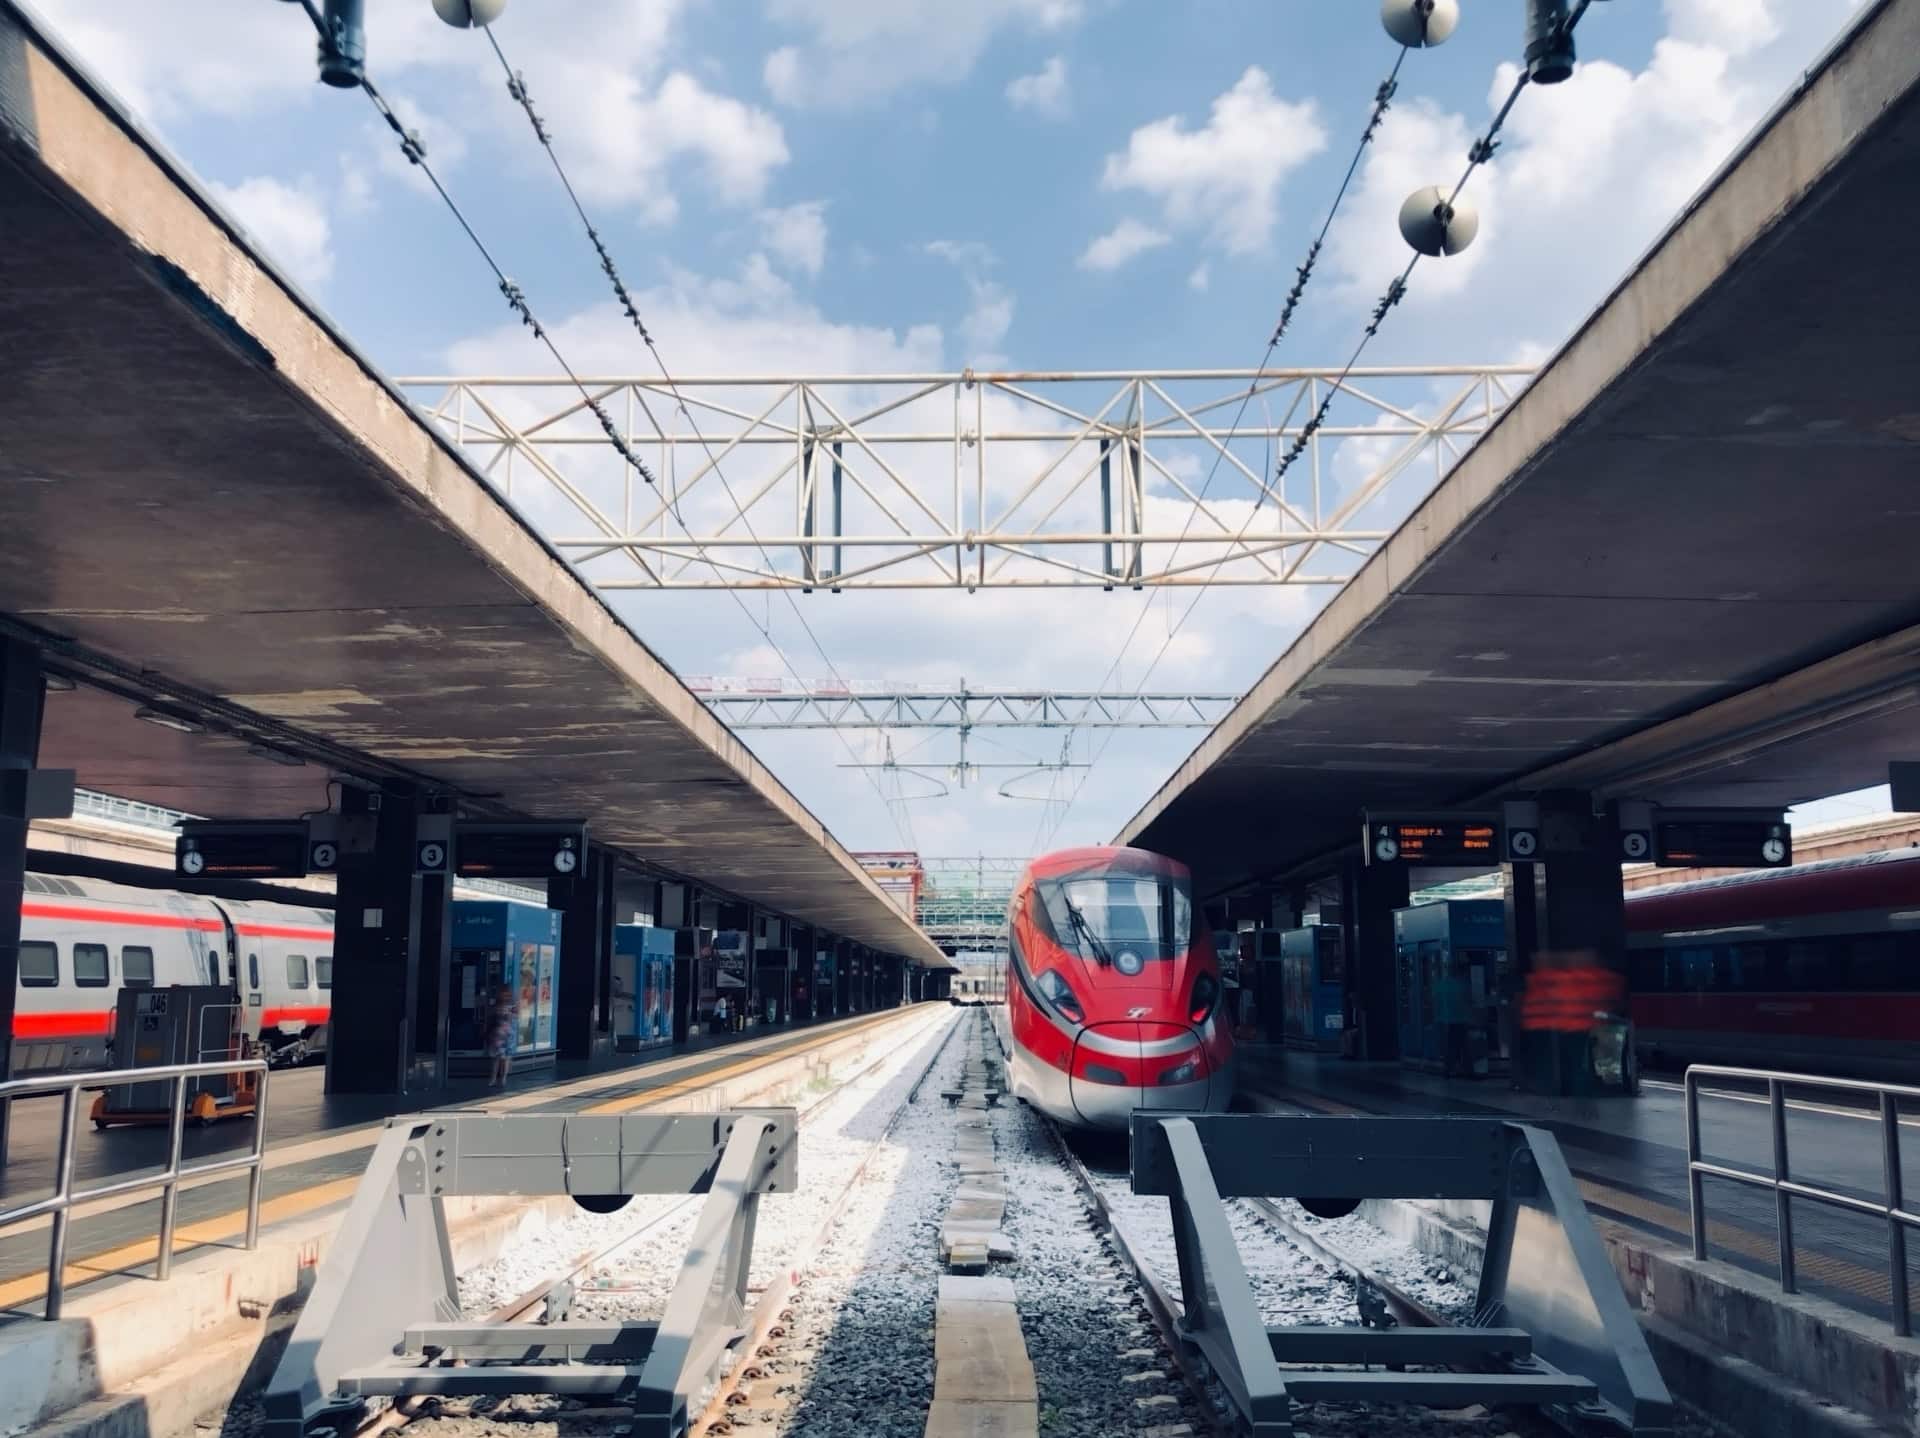 La stazione ferroviaria di Termini è una zona ben collegata e centrale, ricca di hotel economici.